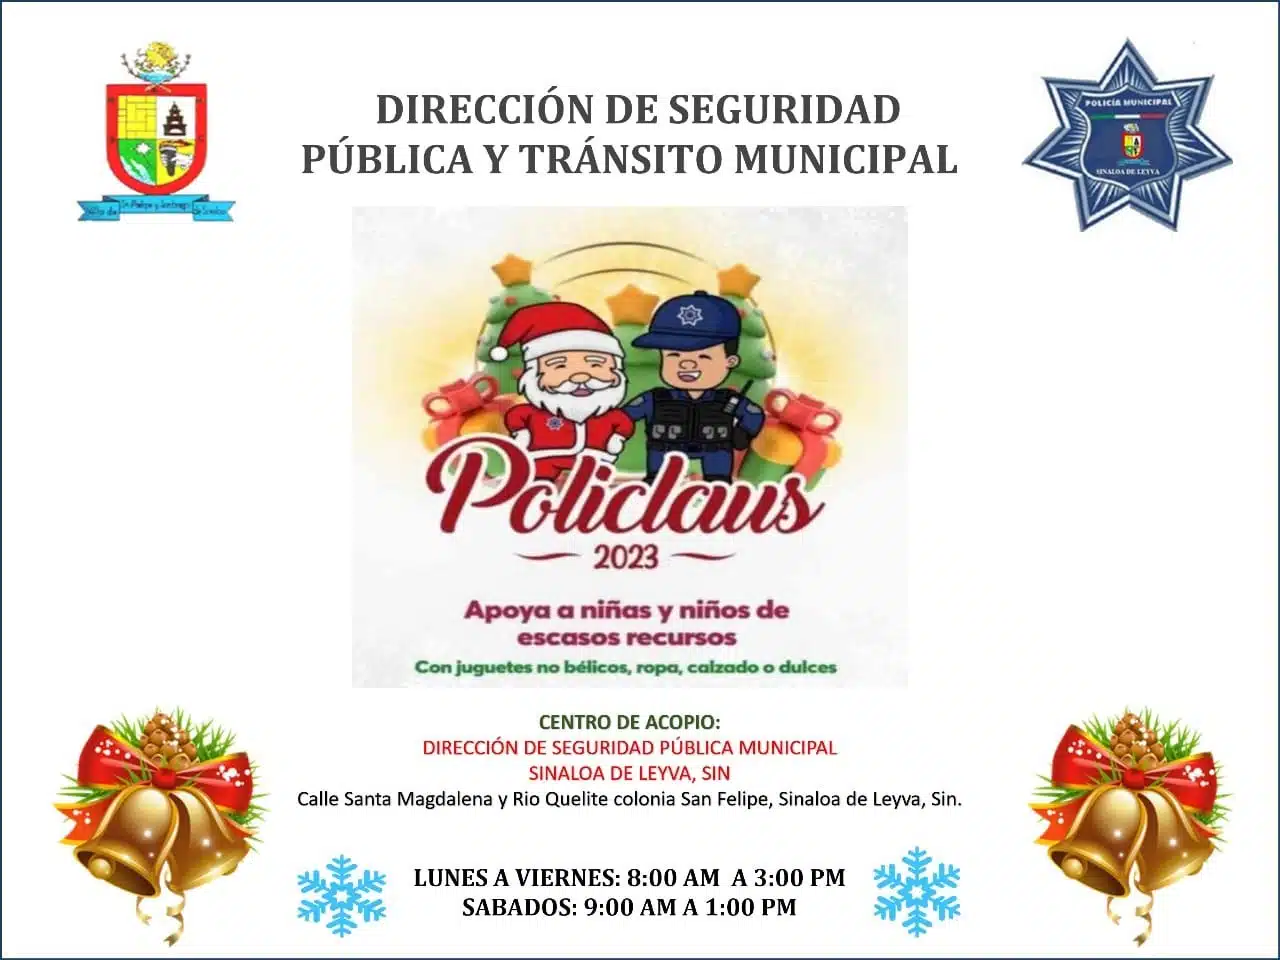 Policlaus 2023 llega a Sinaloa municipio